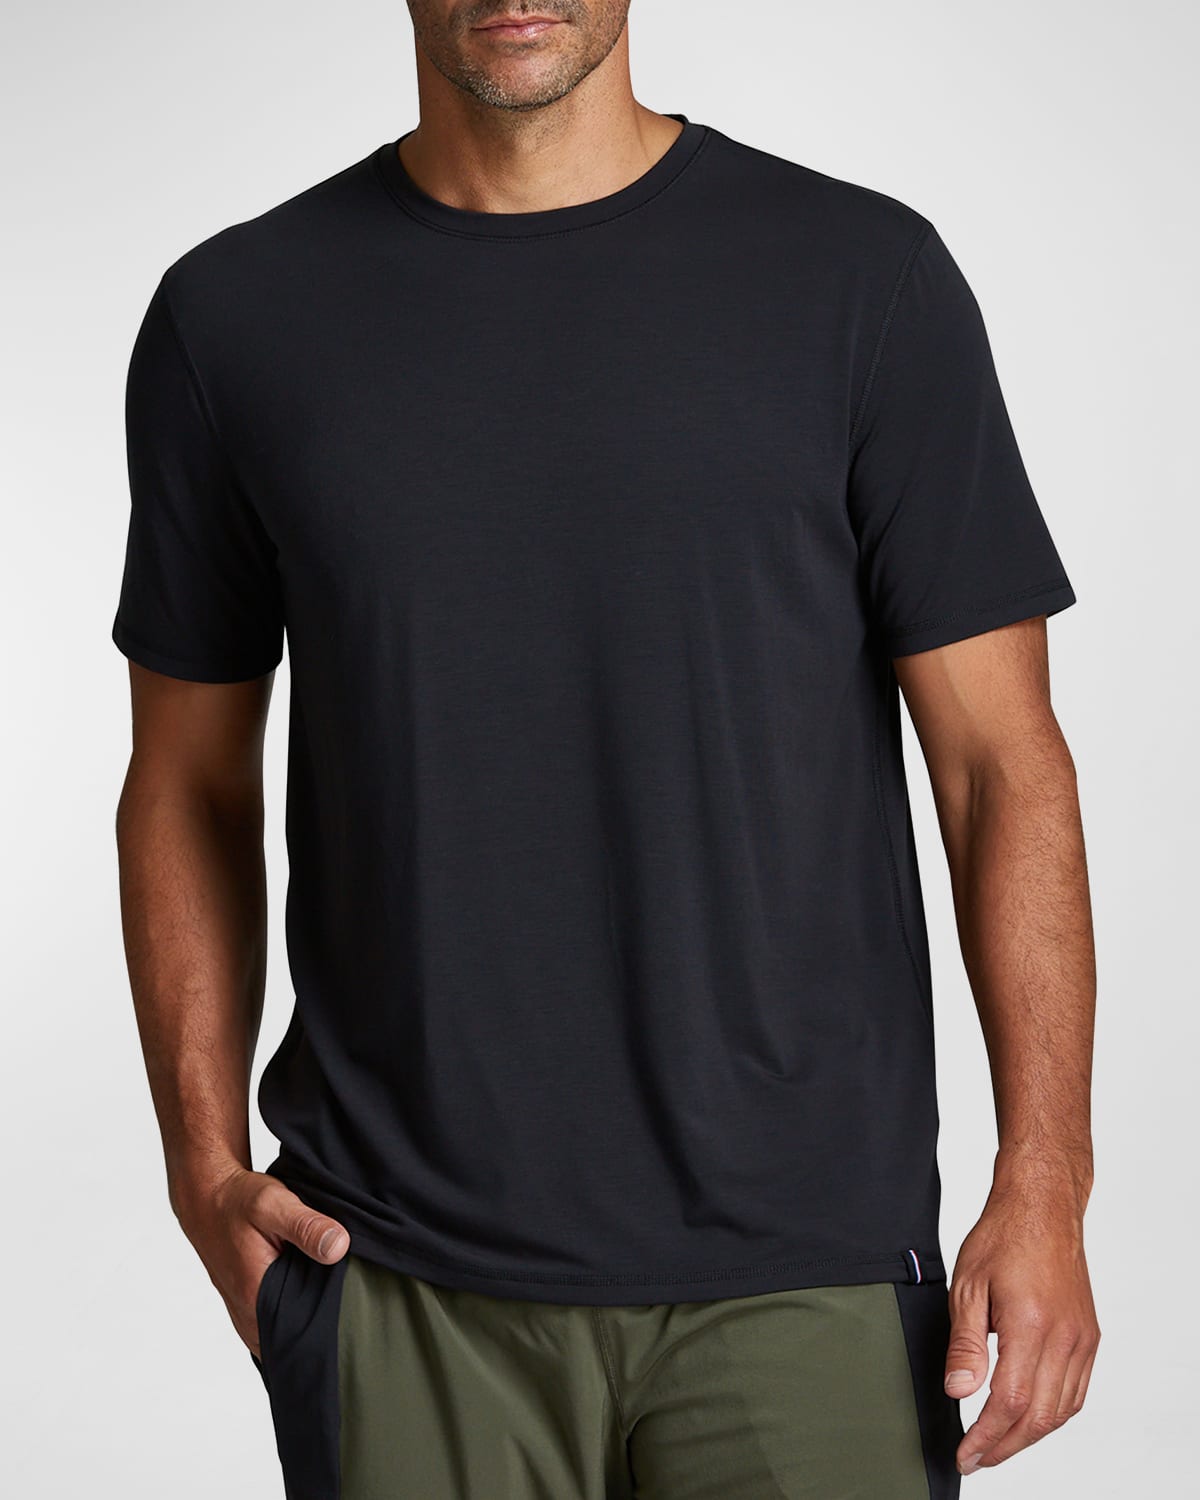 Fourlaps Men's Radius Solid Performance T-Shirt